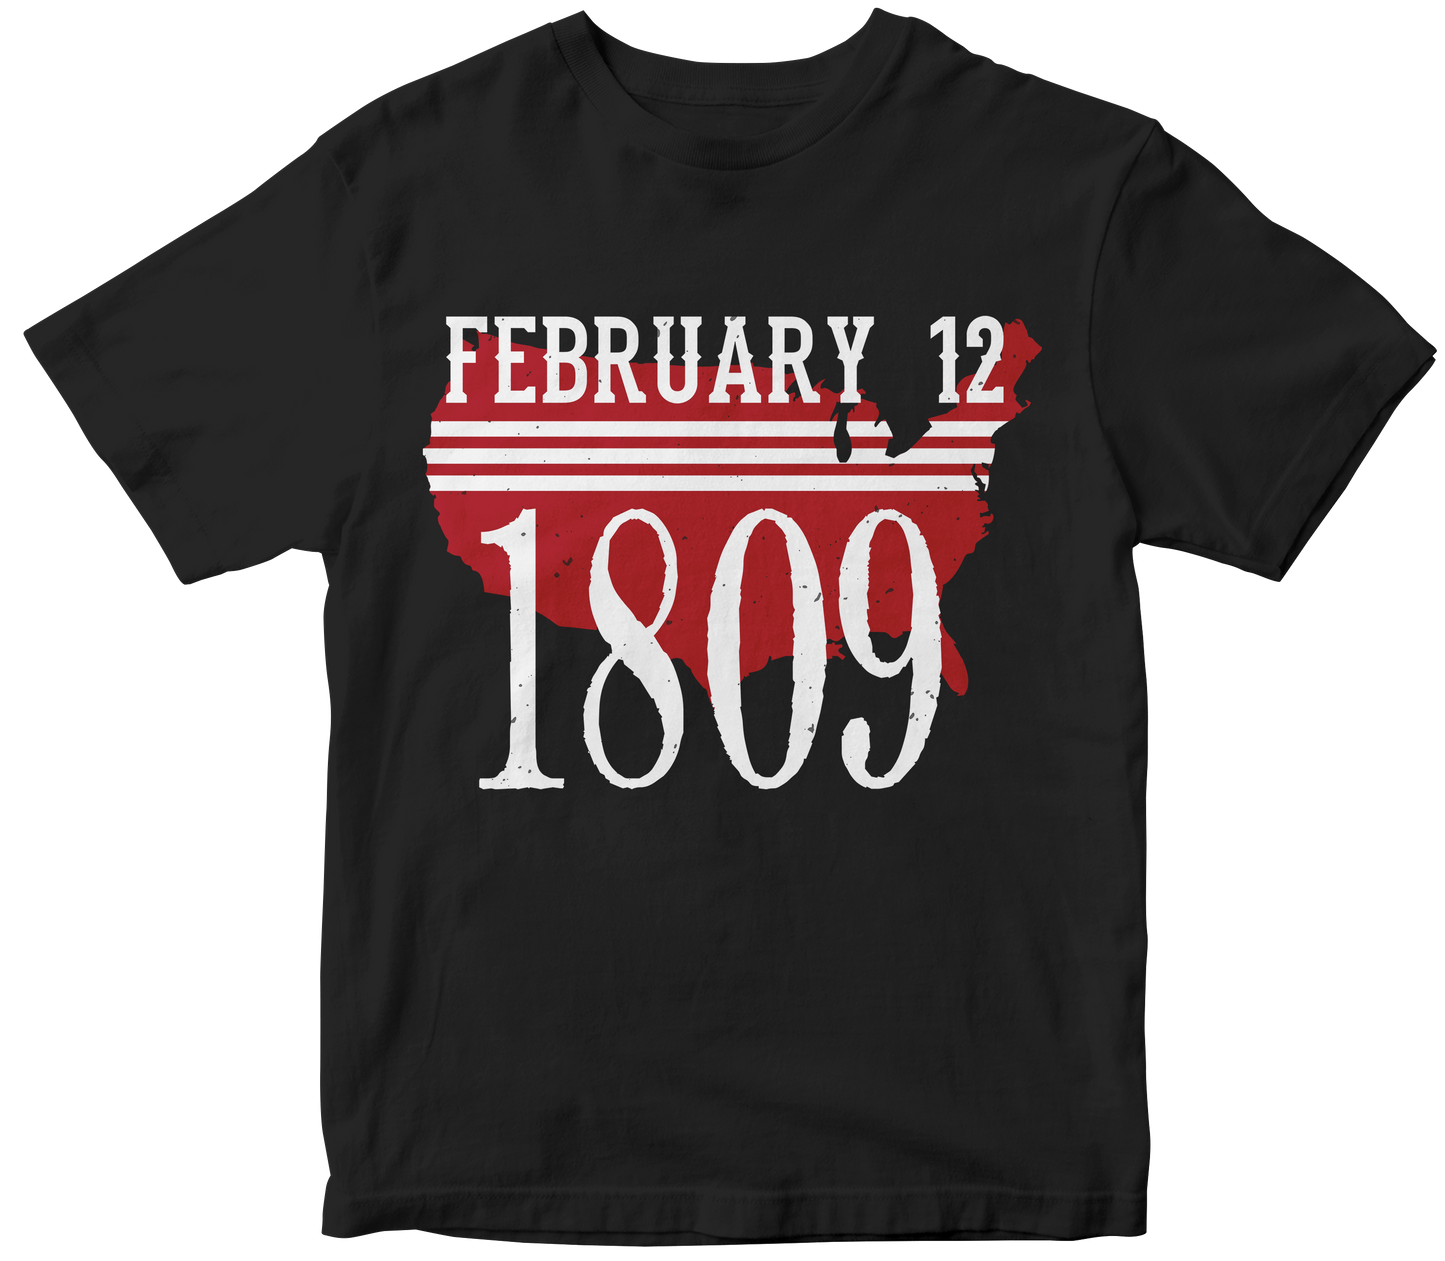 FEBRUARY 12 1803